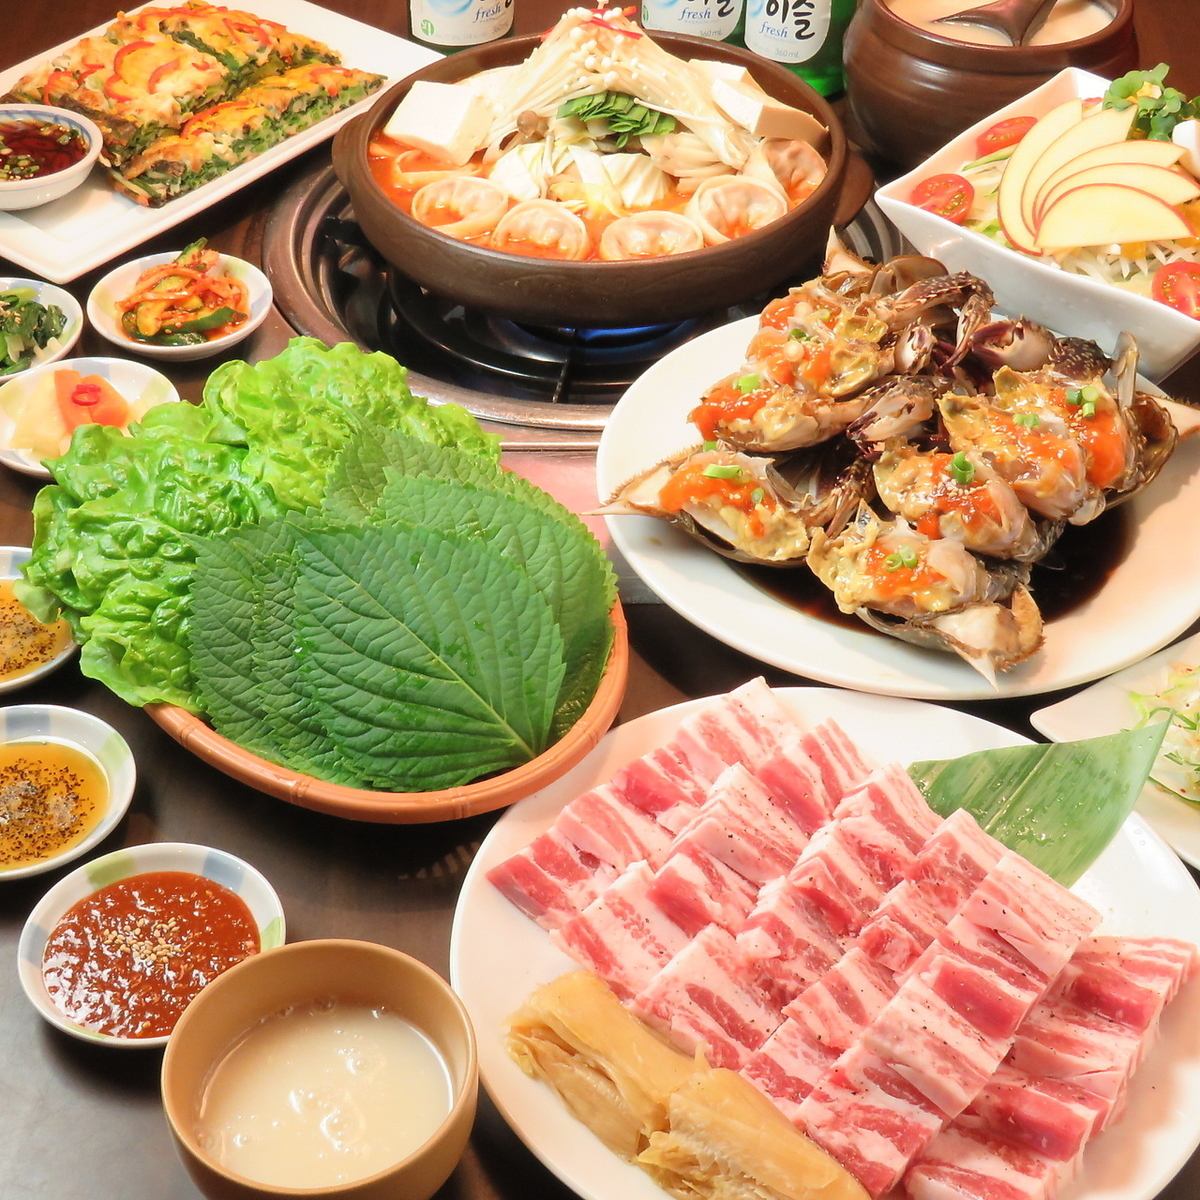 我們喜歡製作正宗的韓國美食，據說這裡是韓國的“美食之城”。